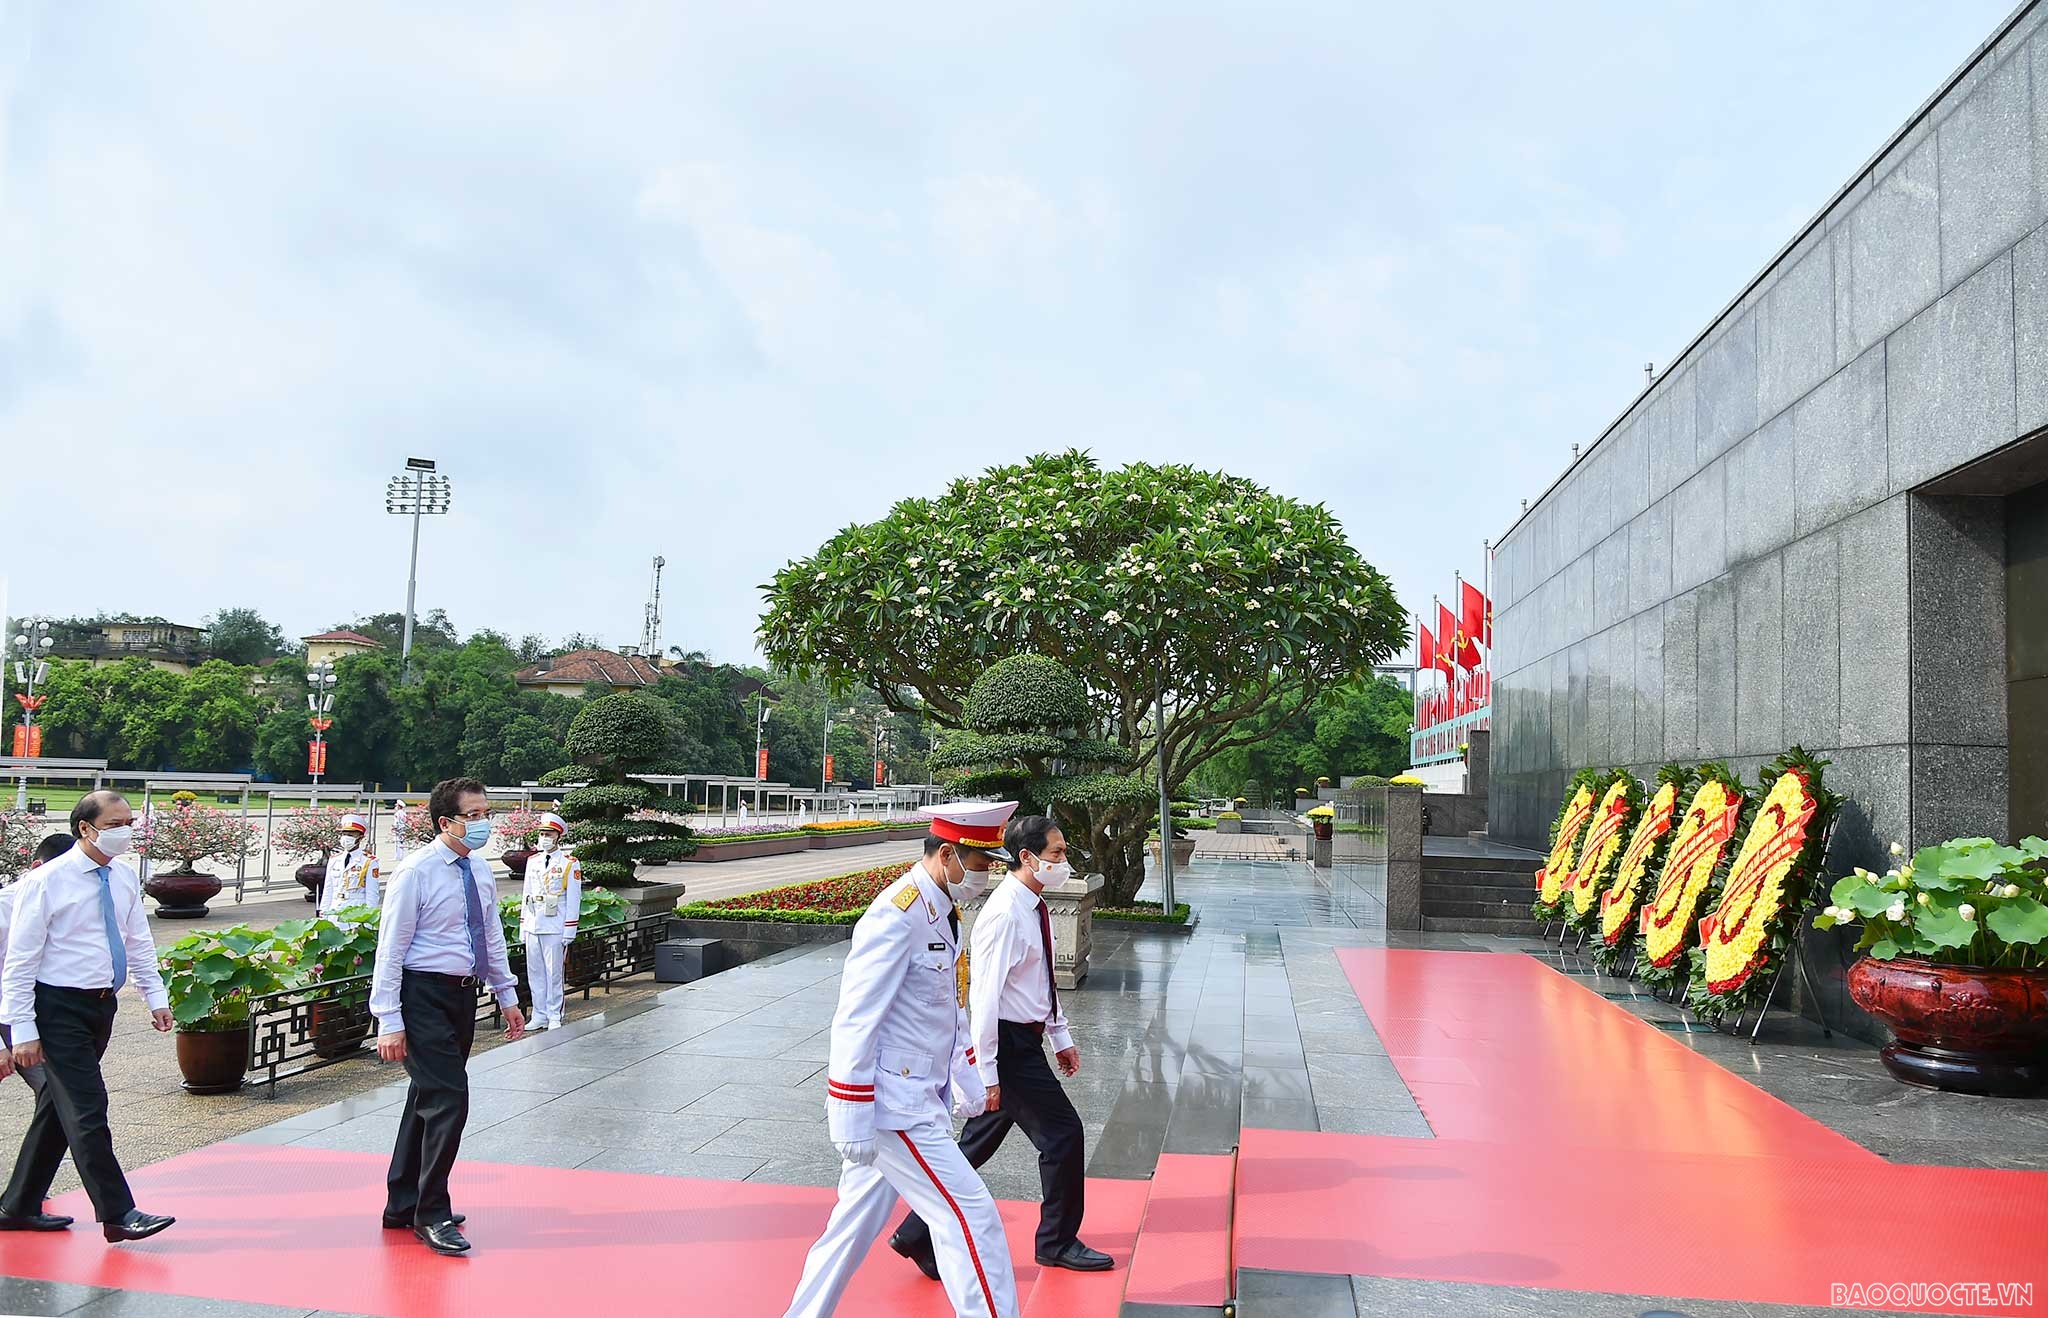 Chủ tịch Hồ Chí Minh luôn quan tâm chỉ đạo sát sao công tác đối ngoại, tiếp cận thực tiễn Việt Nam và thế giới, phát triển và đề xuất nhiều nguyên lý, quan điểm, luận điểm về thời đại, đường lối quốc tế, chính sách đối ngoại và ngoại giao Việt Nam.